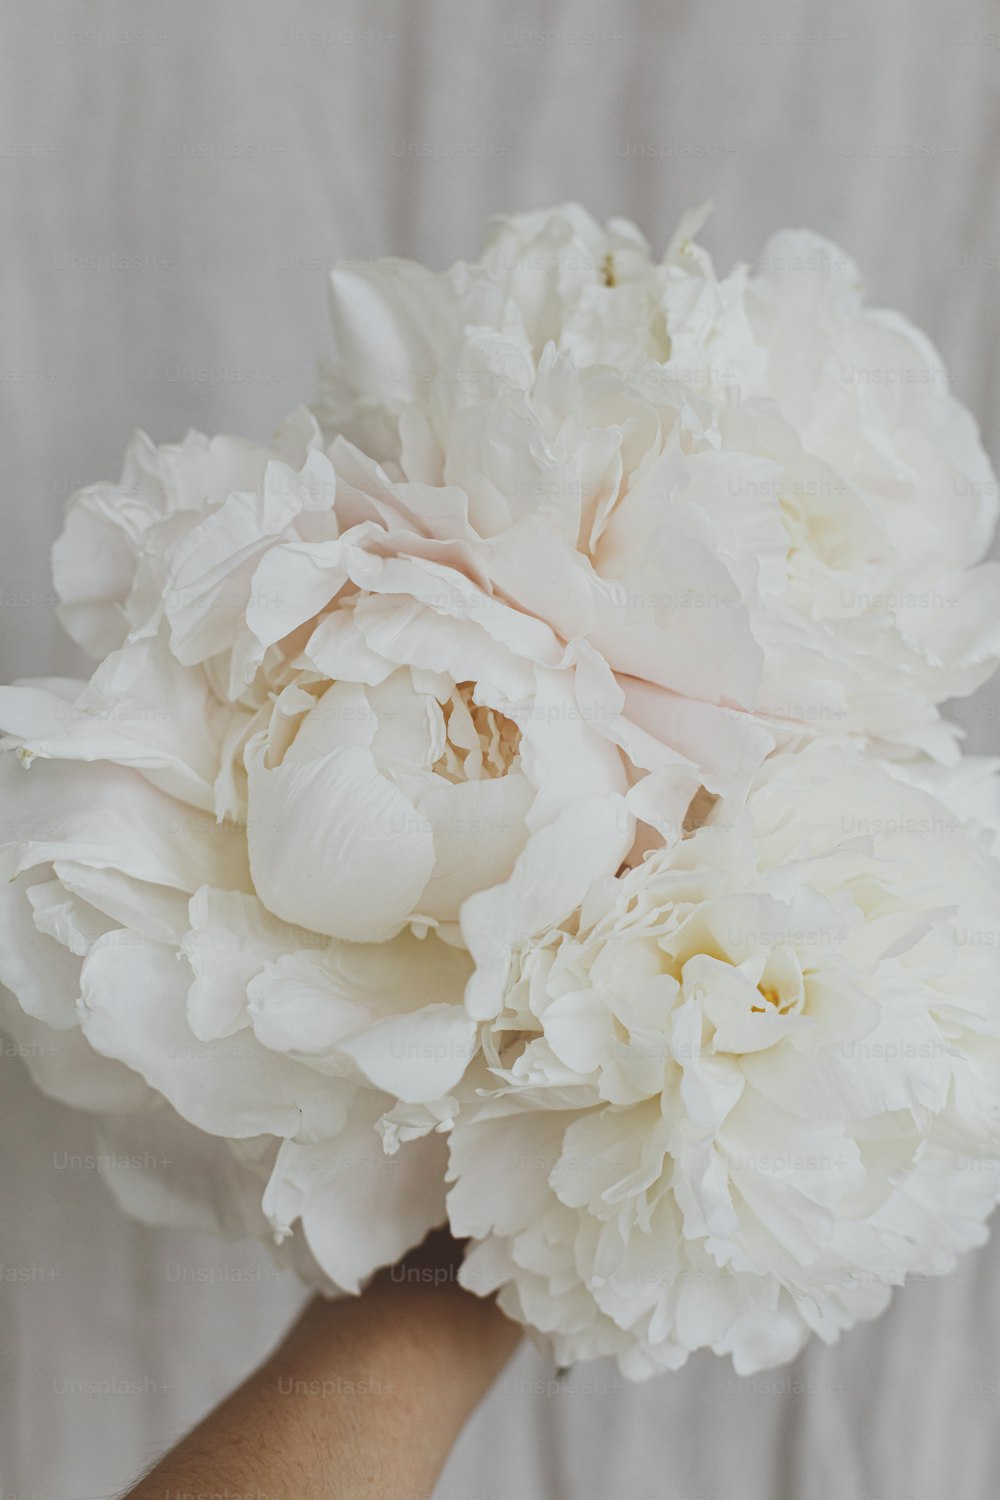 パステルベージュの生地の背景に美しいスタイリッシュな牡丹の花束を持つ手。花屋の手の大きな白い牡丹の花。美しい花の美学。ウェディングブーケ